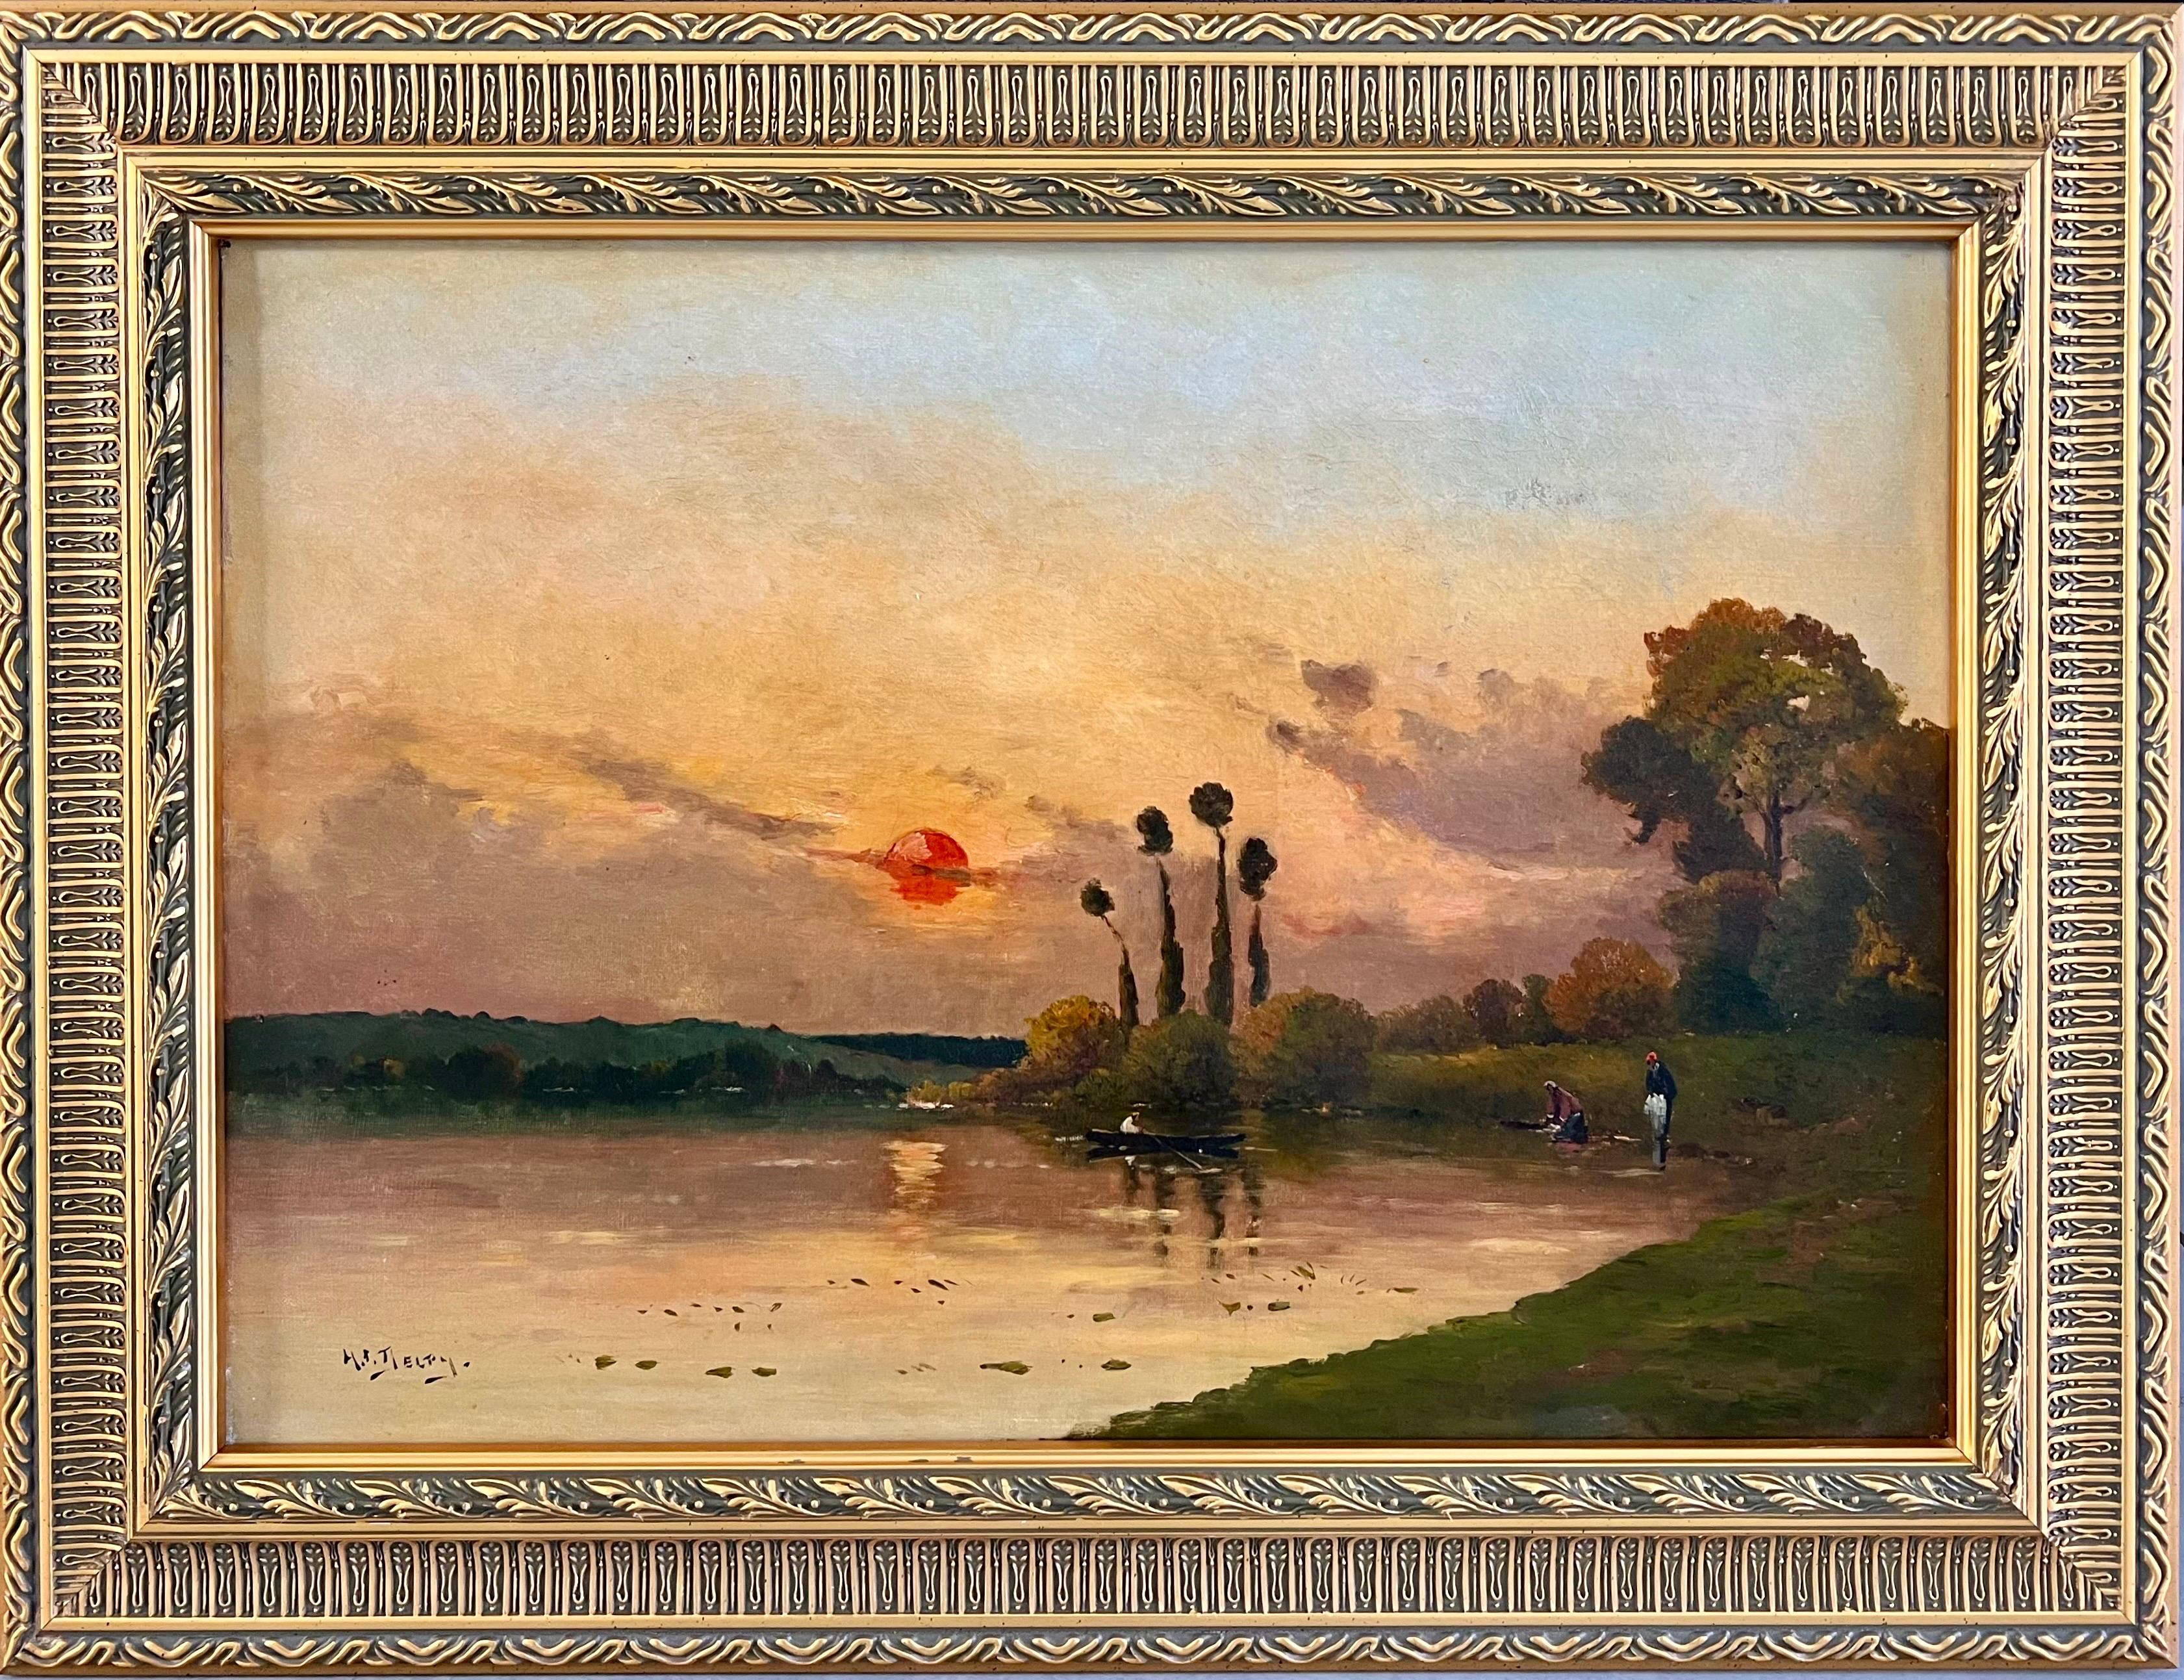 Landscape Painting Henry Jacques Delpy - Peinture à l'huile de l'école de Barbizon, Coucher de soleil sur une rivière paysage impressionniste